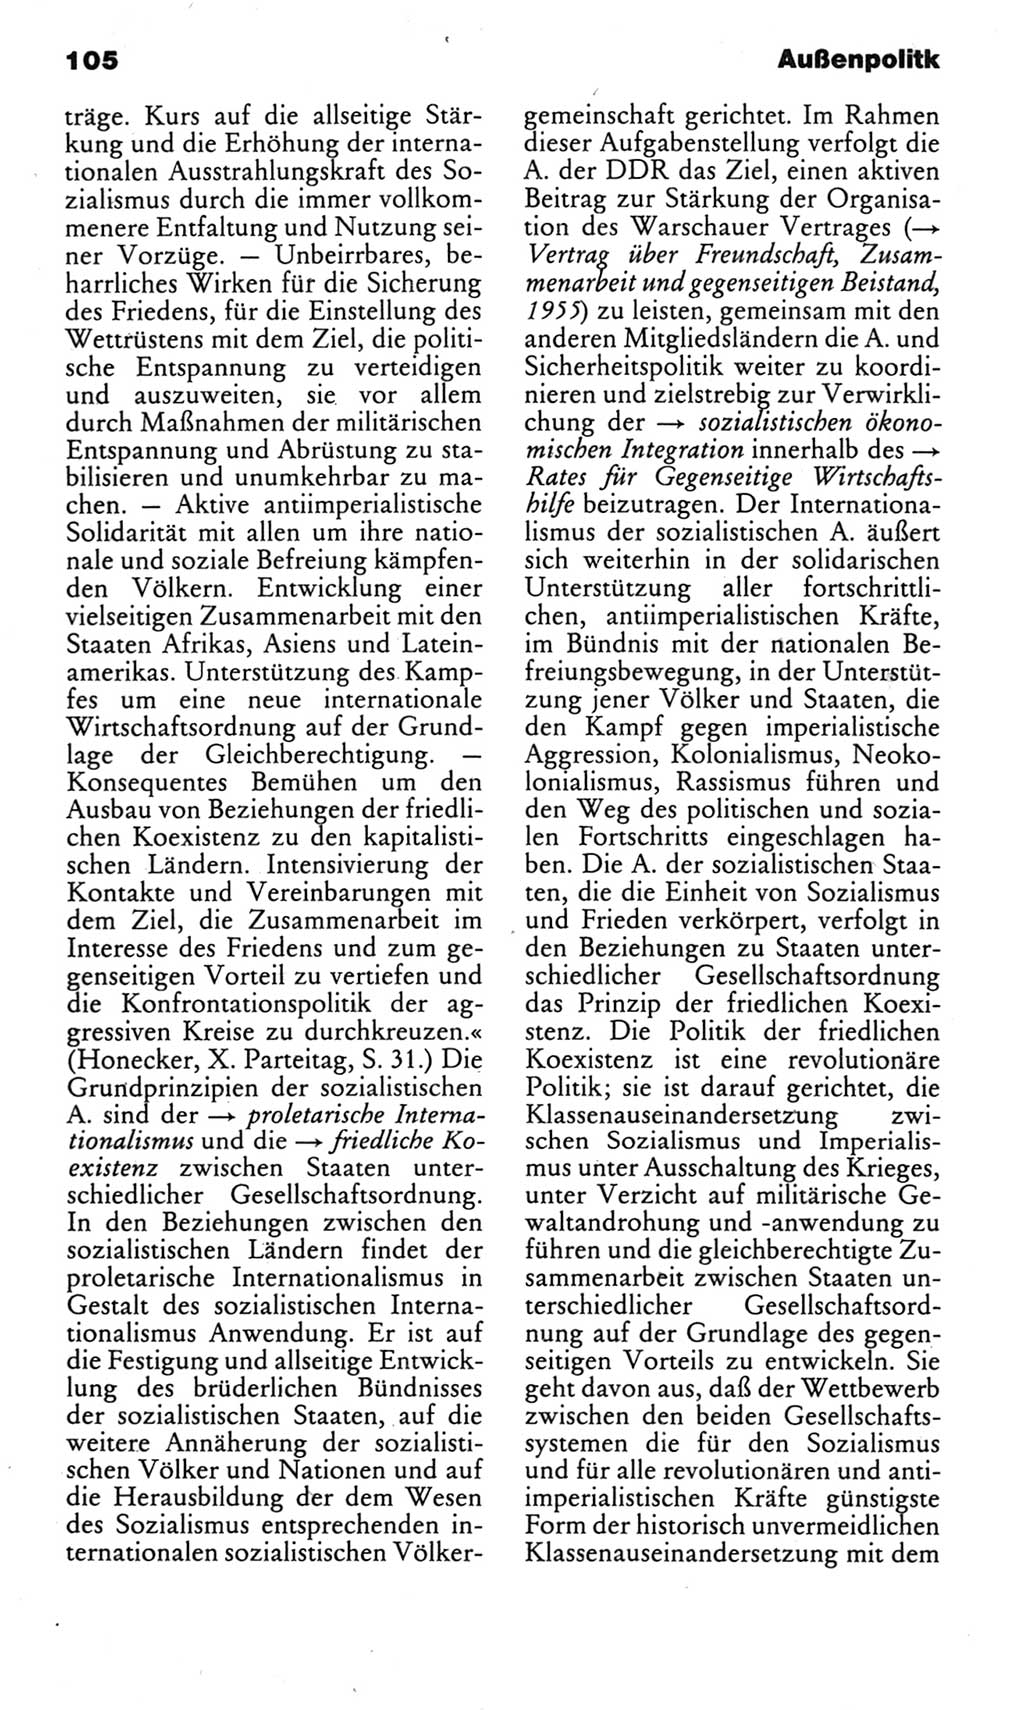 Kleines politisches Wörterbuch [Deutsche Demokratische Republik (DDR)] 1983, Seite 105 (Kl. pol. Wb. DDR 1983, S. 105)